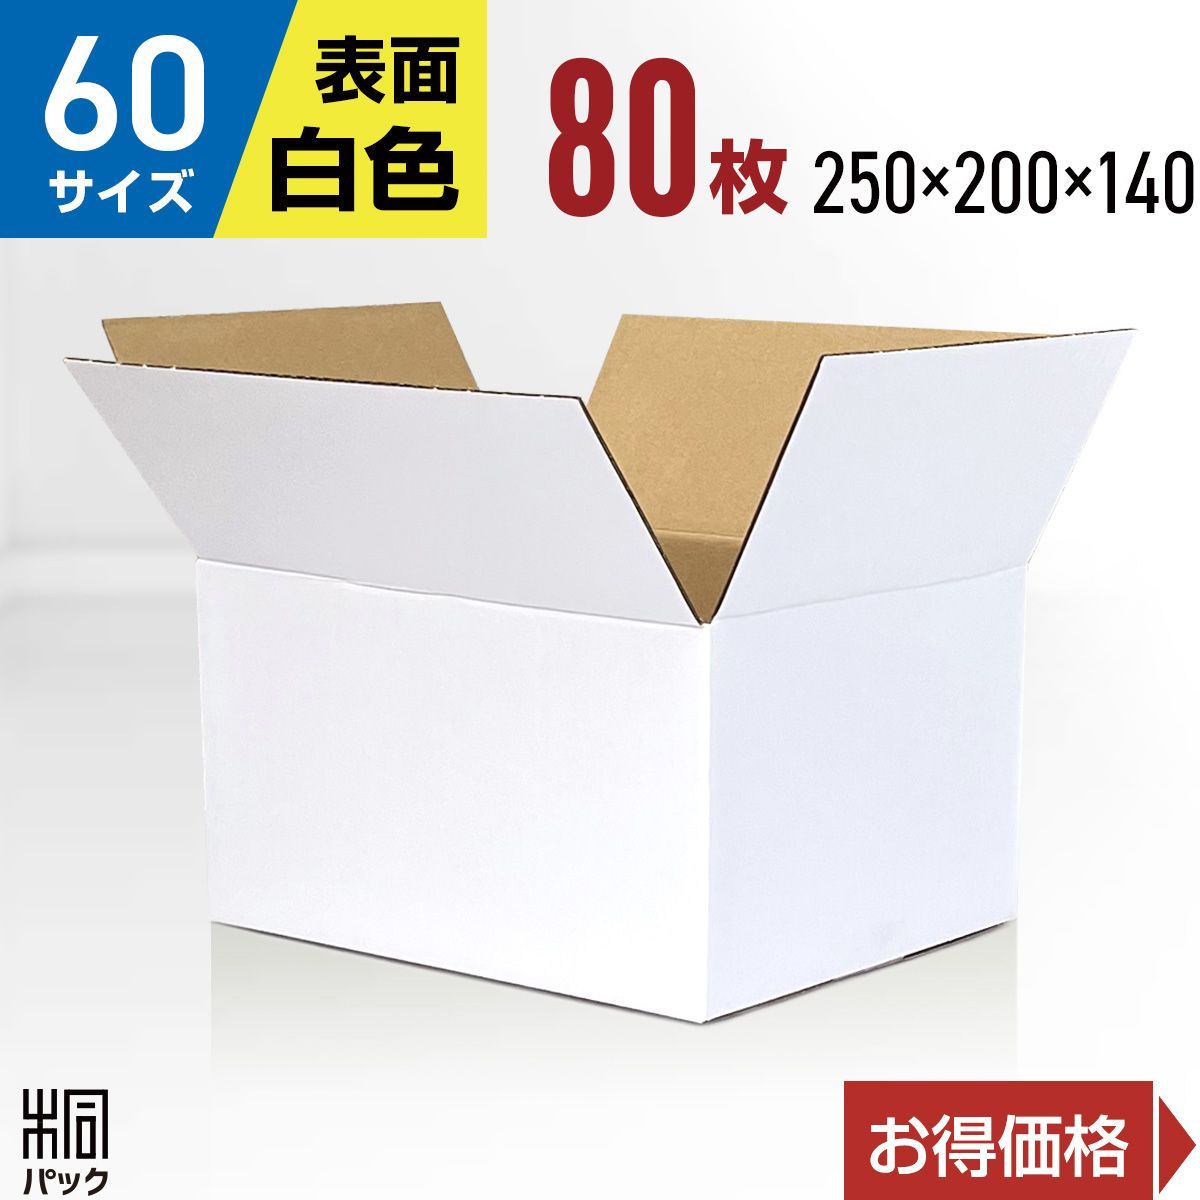 ダンボール箱 白色 60サイズ 80枚 ダンボール 段ボール 段ボール箱 箱